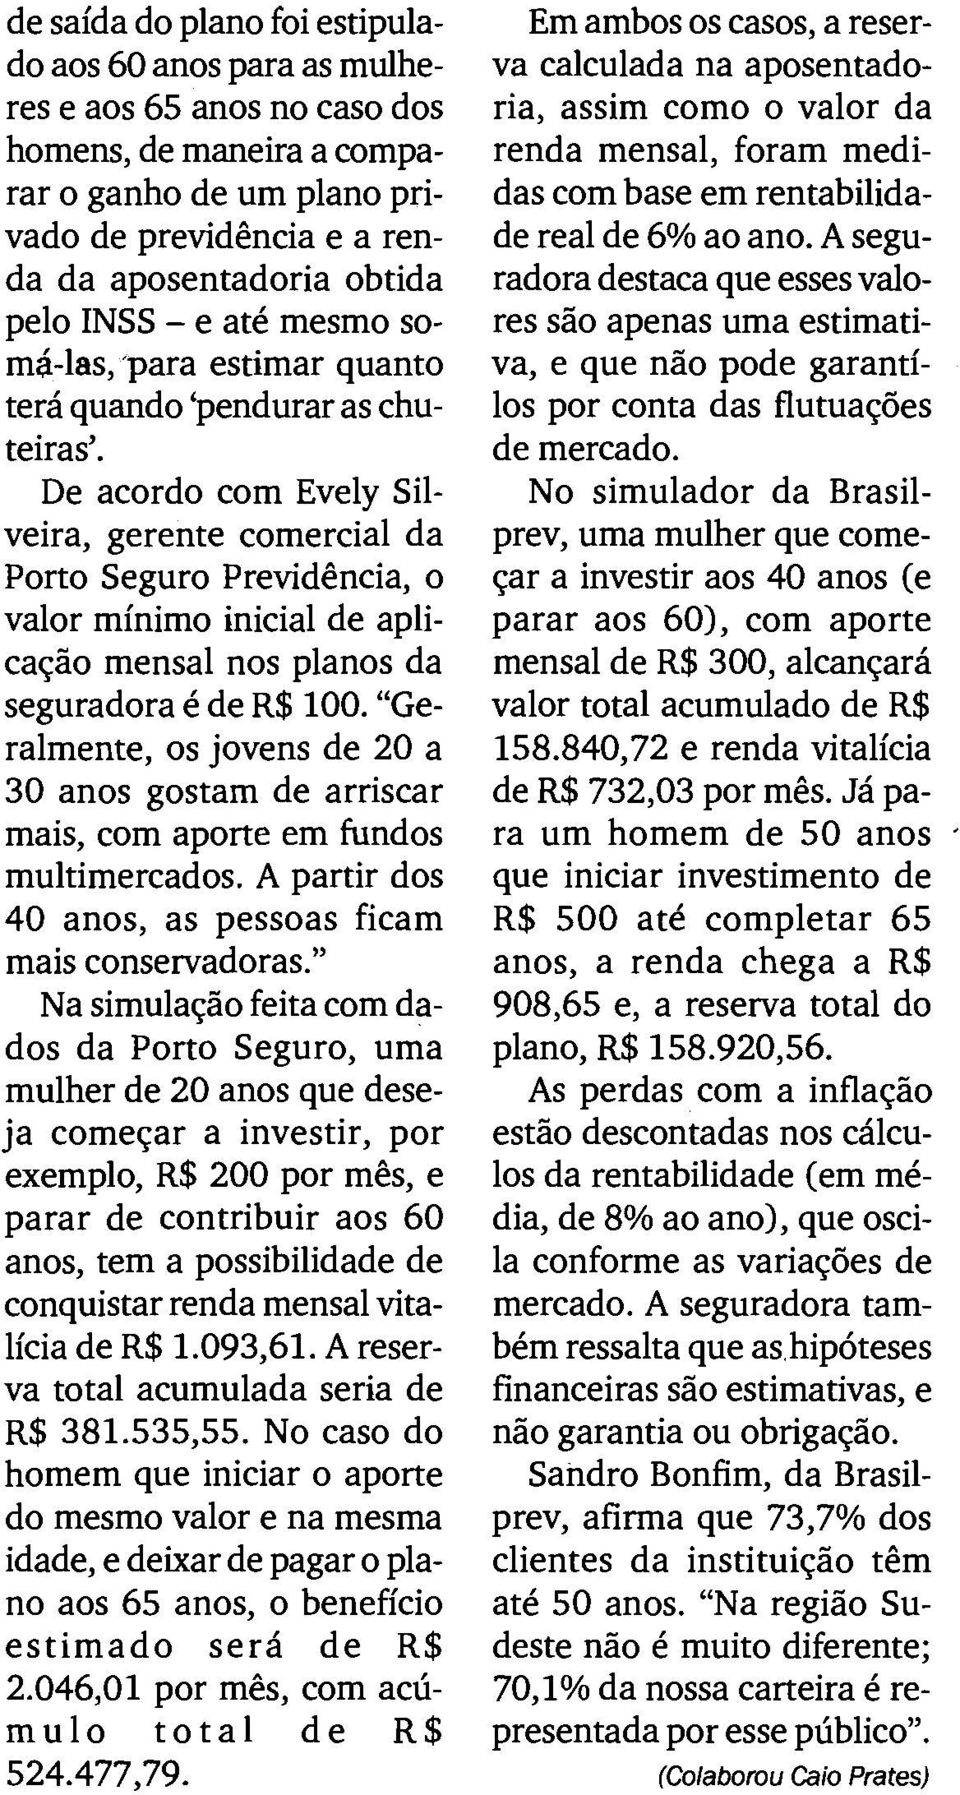 De acordo com Evely Silveira, gerente comercial da Porto Seguro Previdencia, o valor minimo inicial de aplicaqiio mensal nos planos da seguradora 6 de R$100.